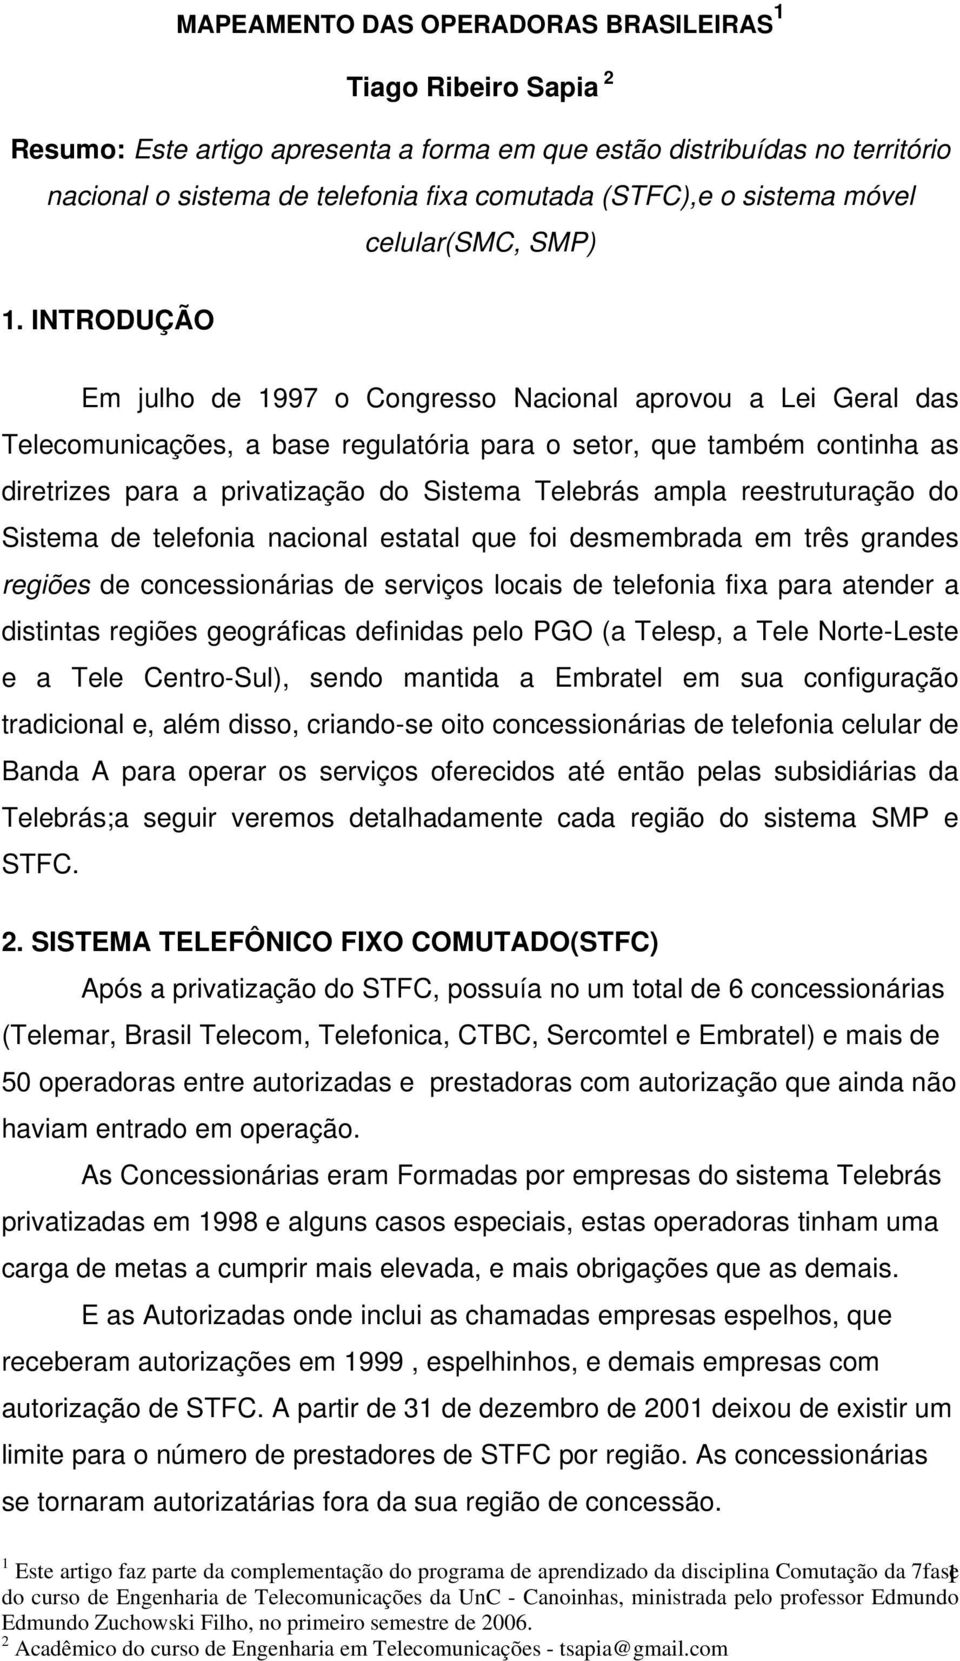 INTRODUÇÃO Em julho de 1997 o Congresso Nacional aprovou a Lei Geral das Telecomunicações, a base regulatória para o setor, que também continha as diretrizes para a privatização do Sistema Telebrás